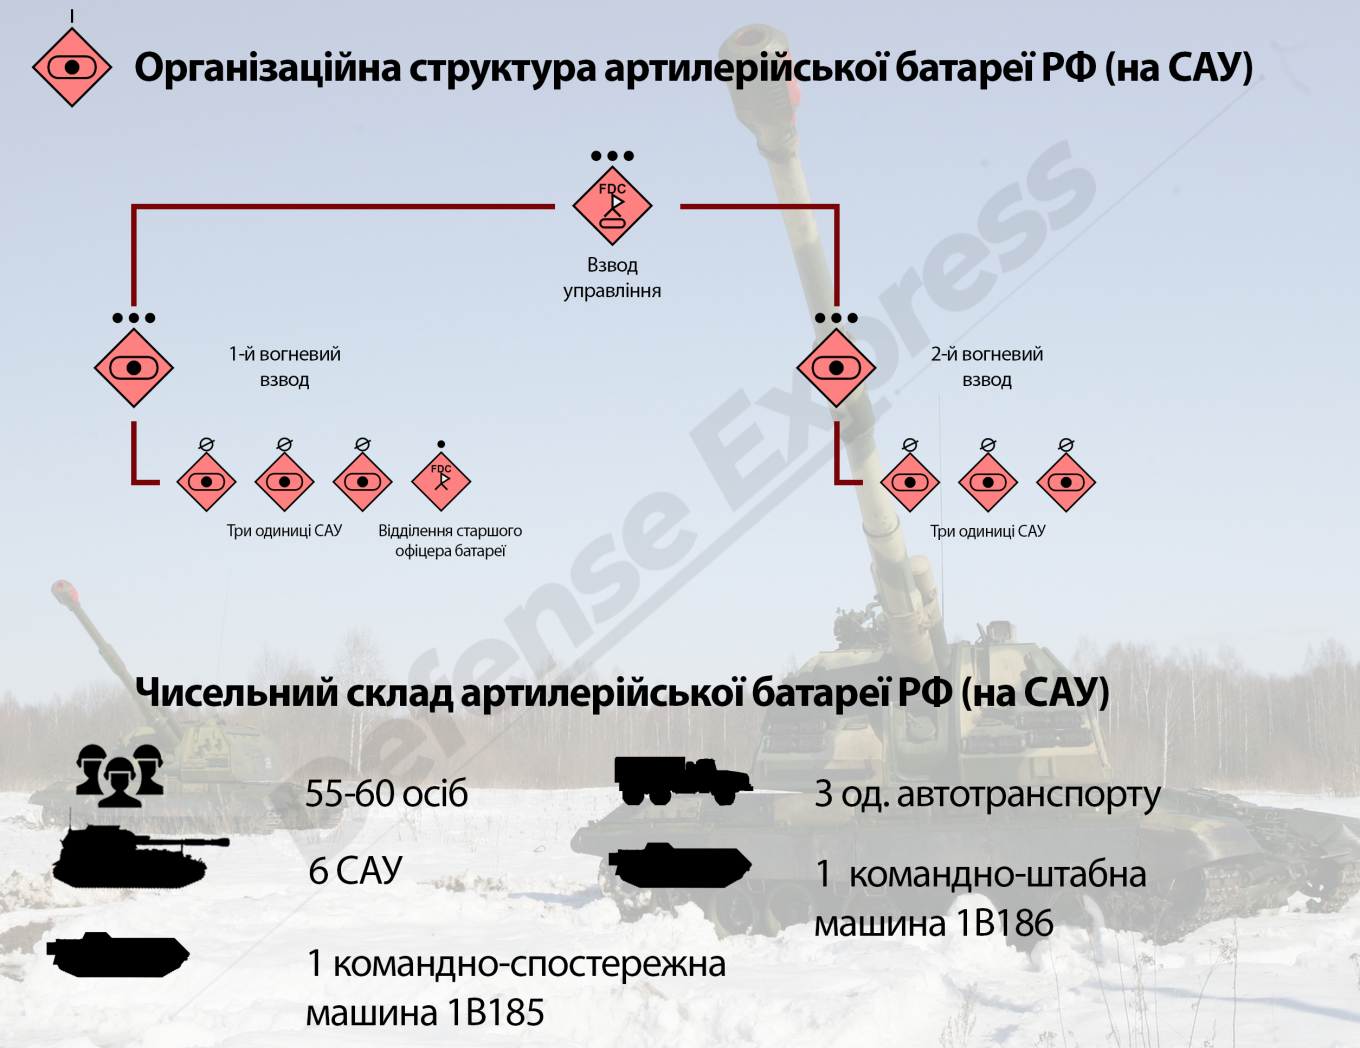 Організаційно-штатна структура артилерійської батареї РФ САУ